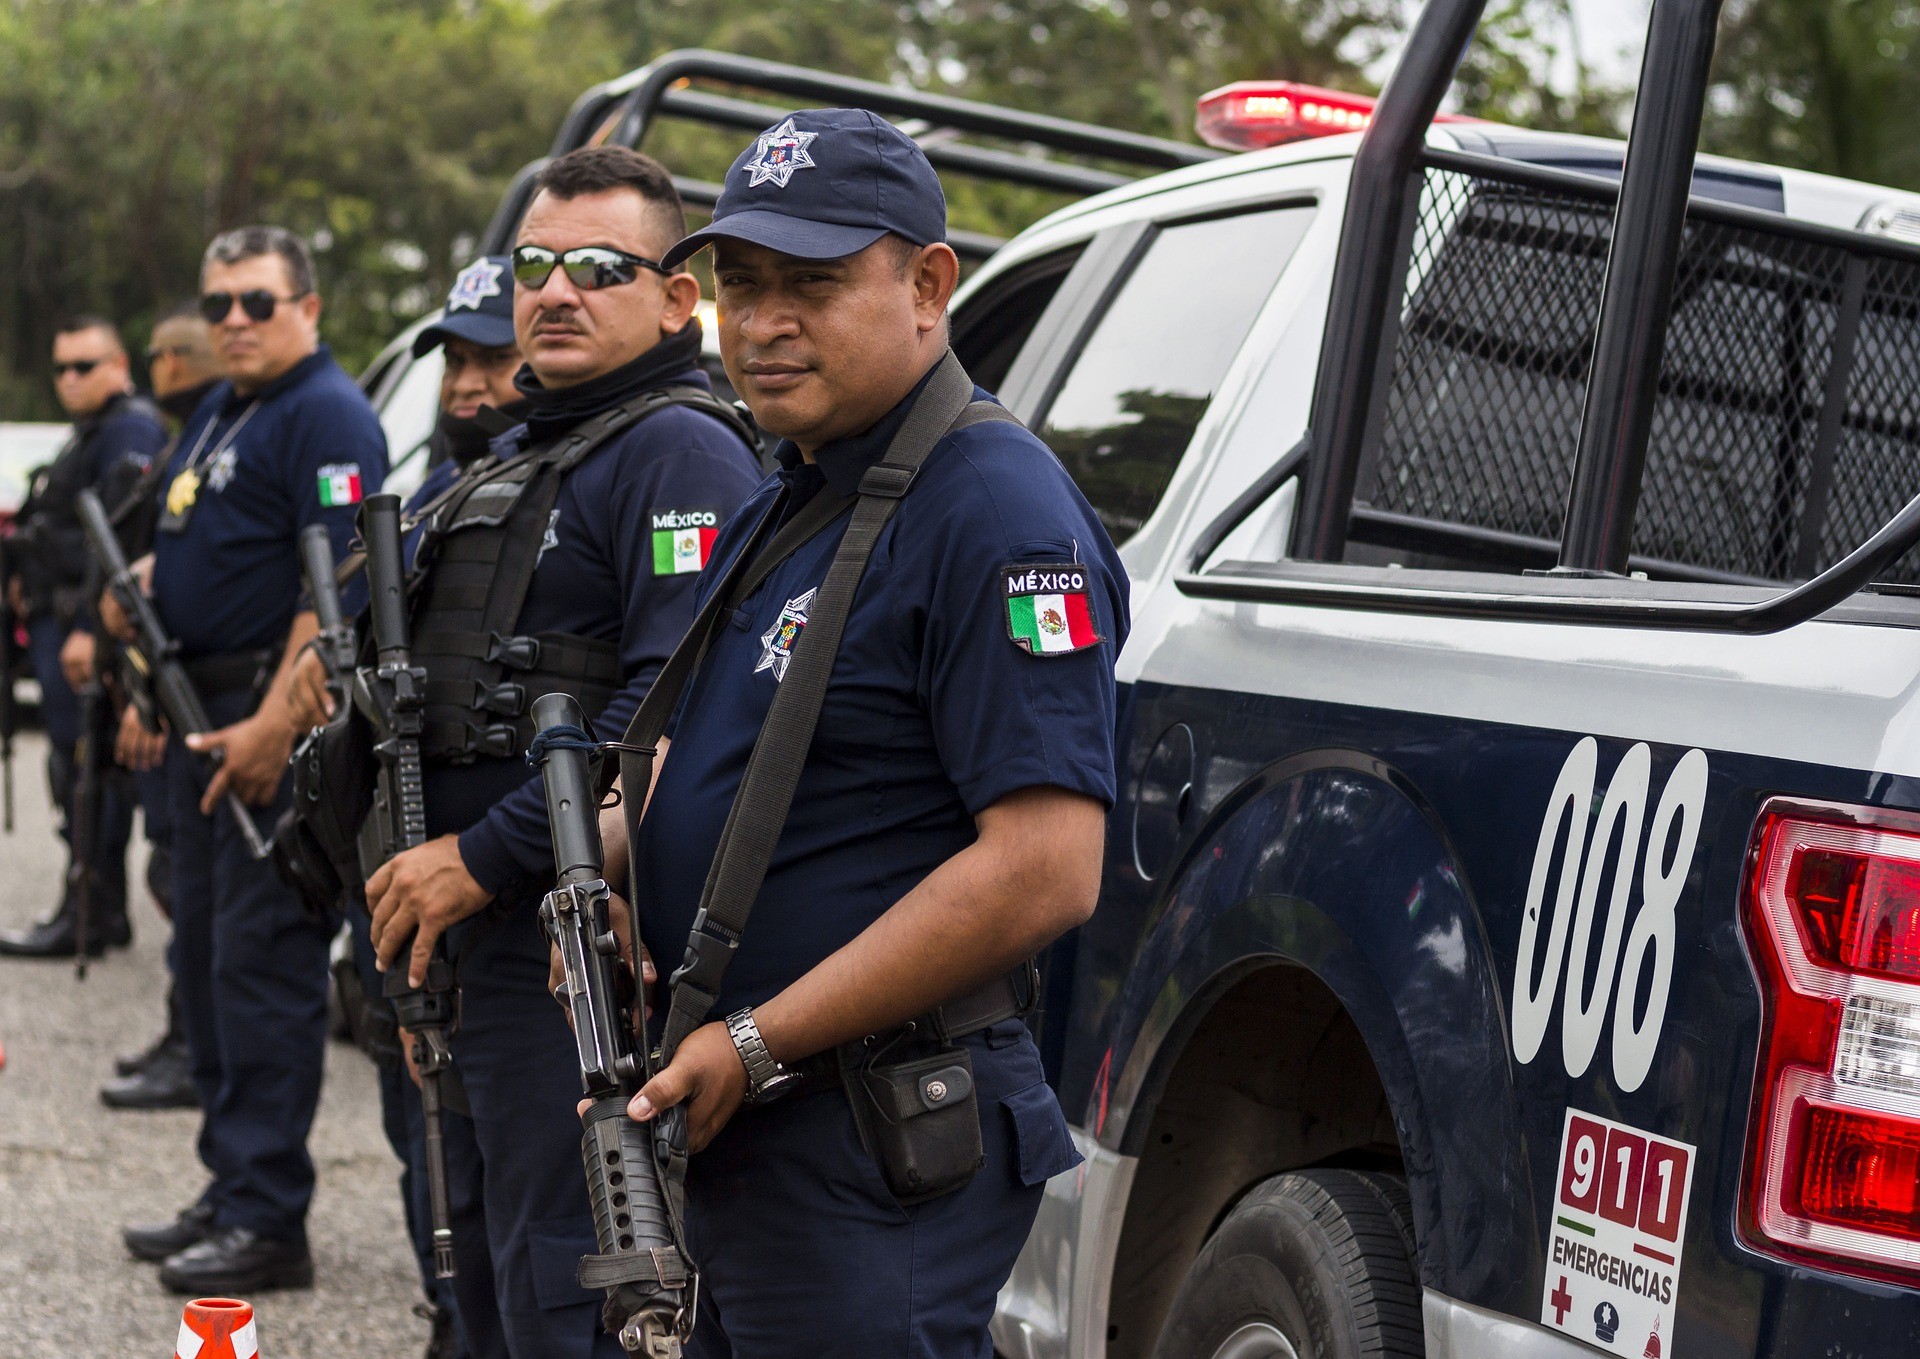 В Мексике отпустили сына наркобарона Коротышки, чтобы спасти жизни других людей